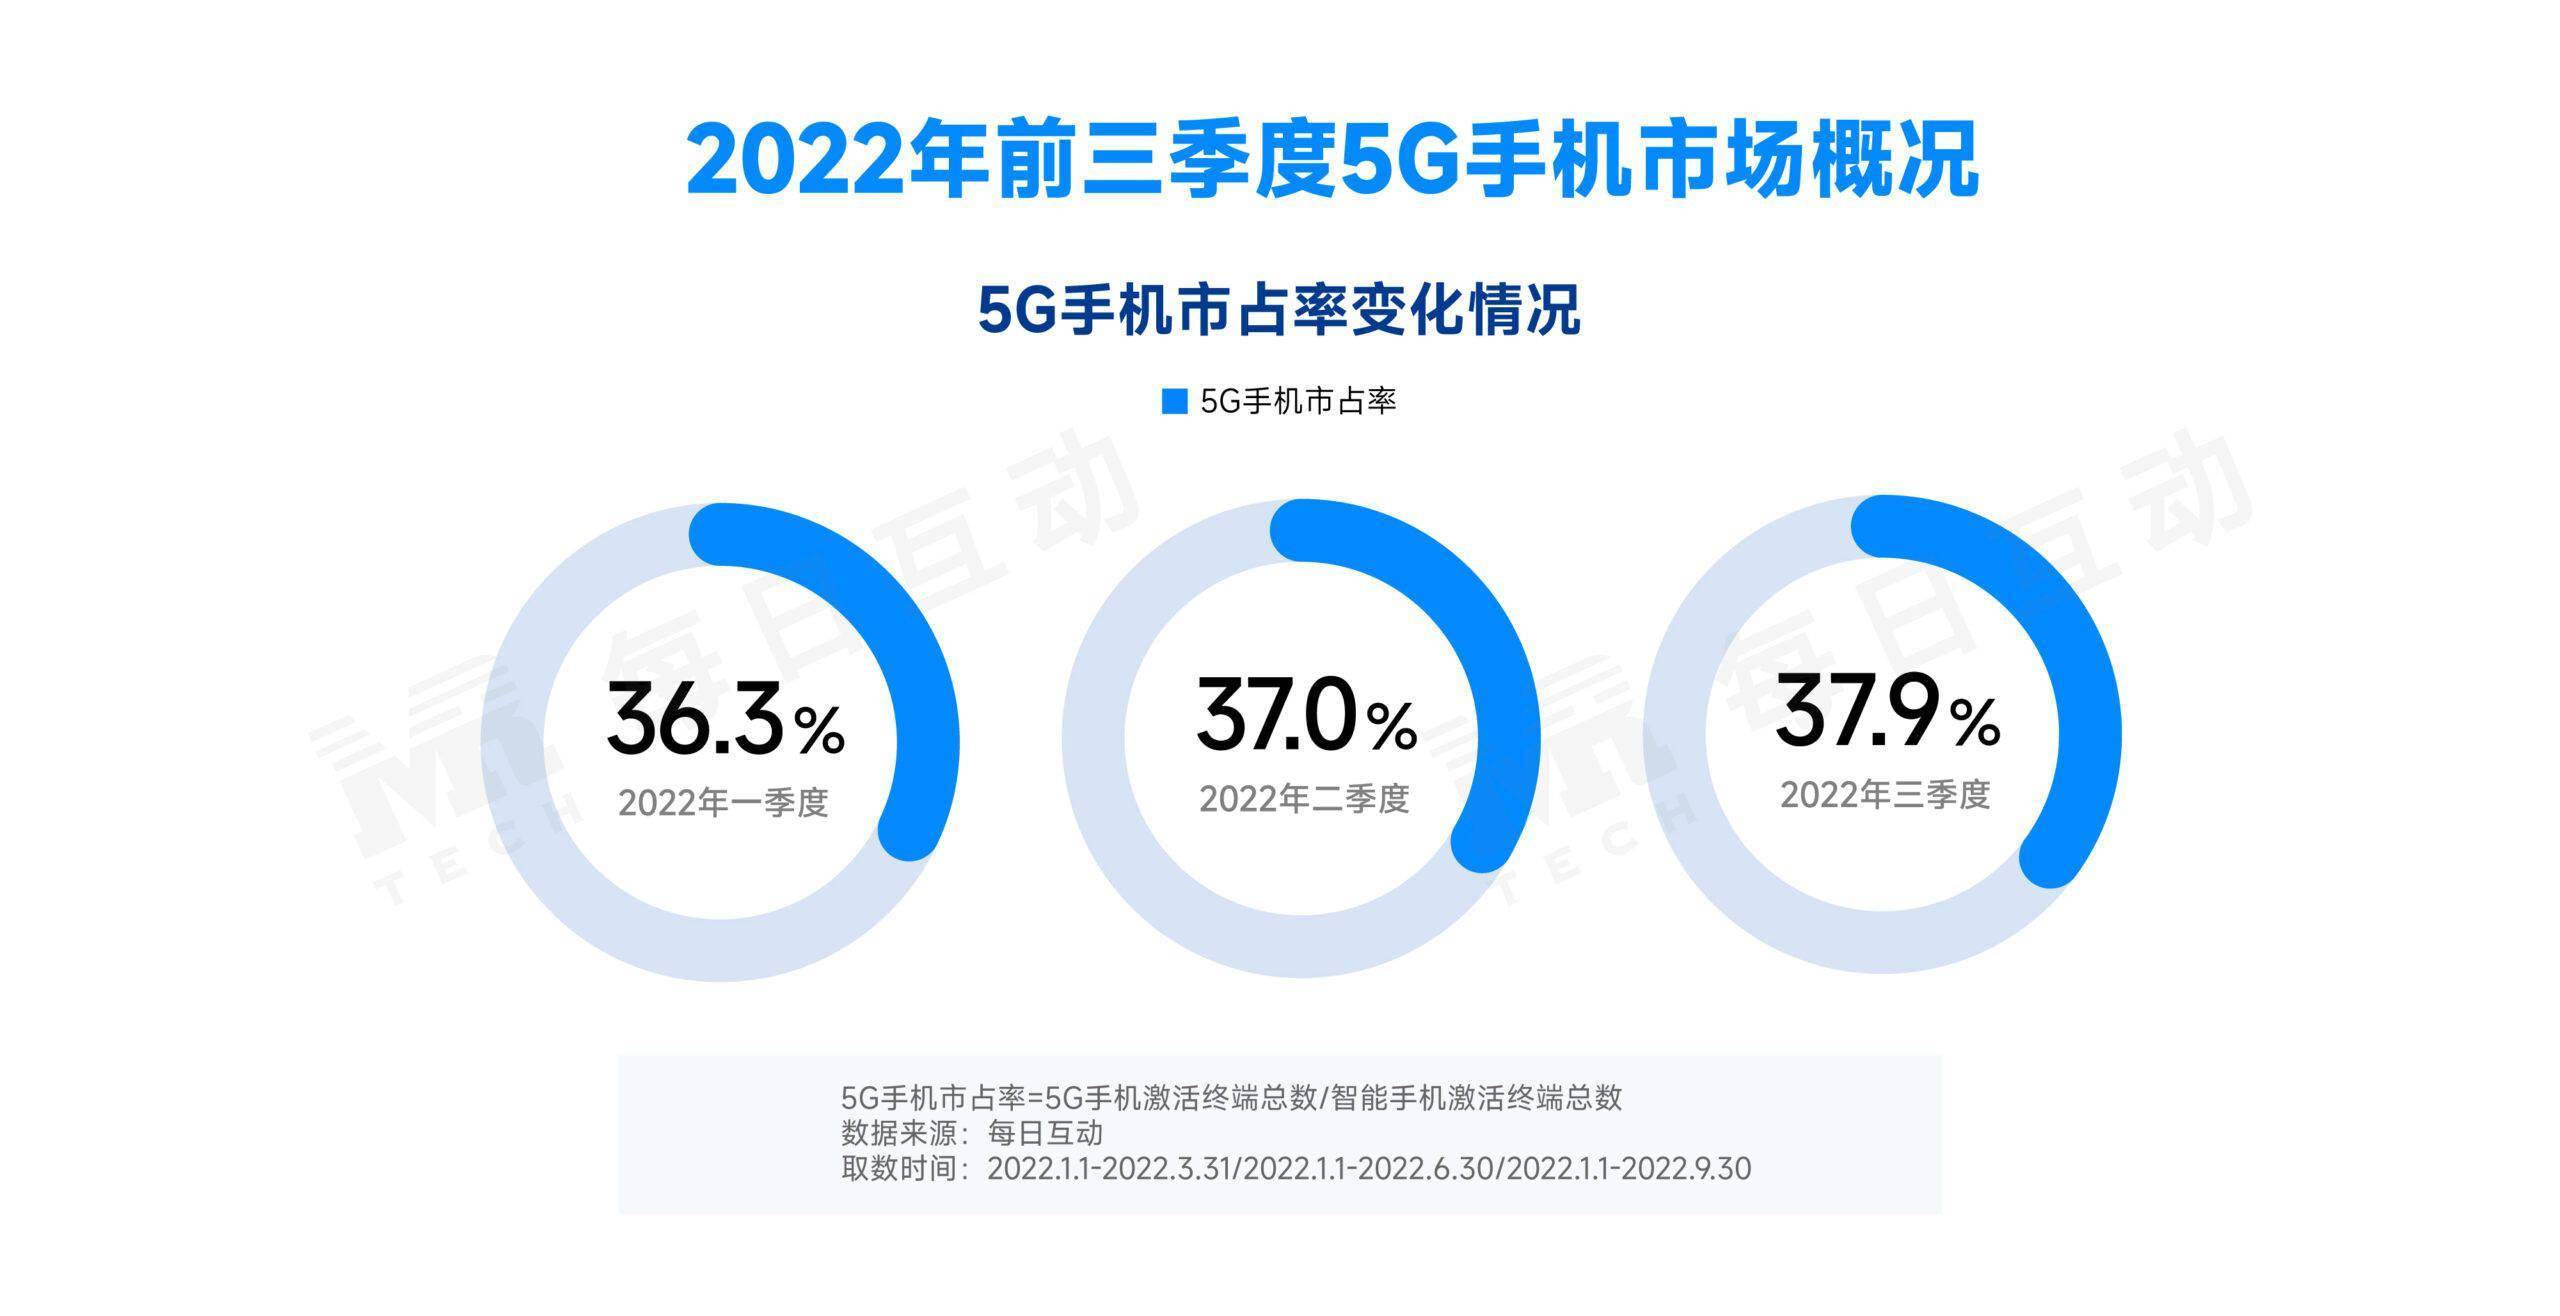 华为核手机排行榜
:每日互动大数据 2022 年三季度 5G 手机报告：iPhone 领跑国内市场，荣耀新增表现亮眼